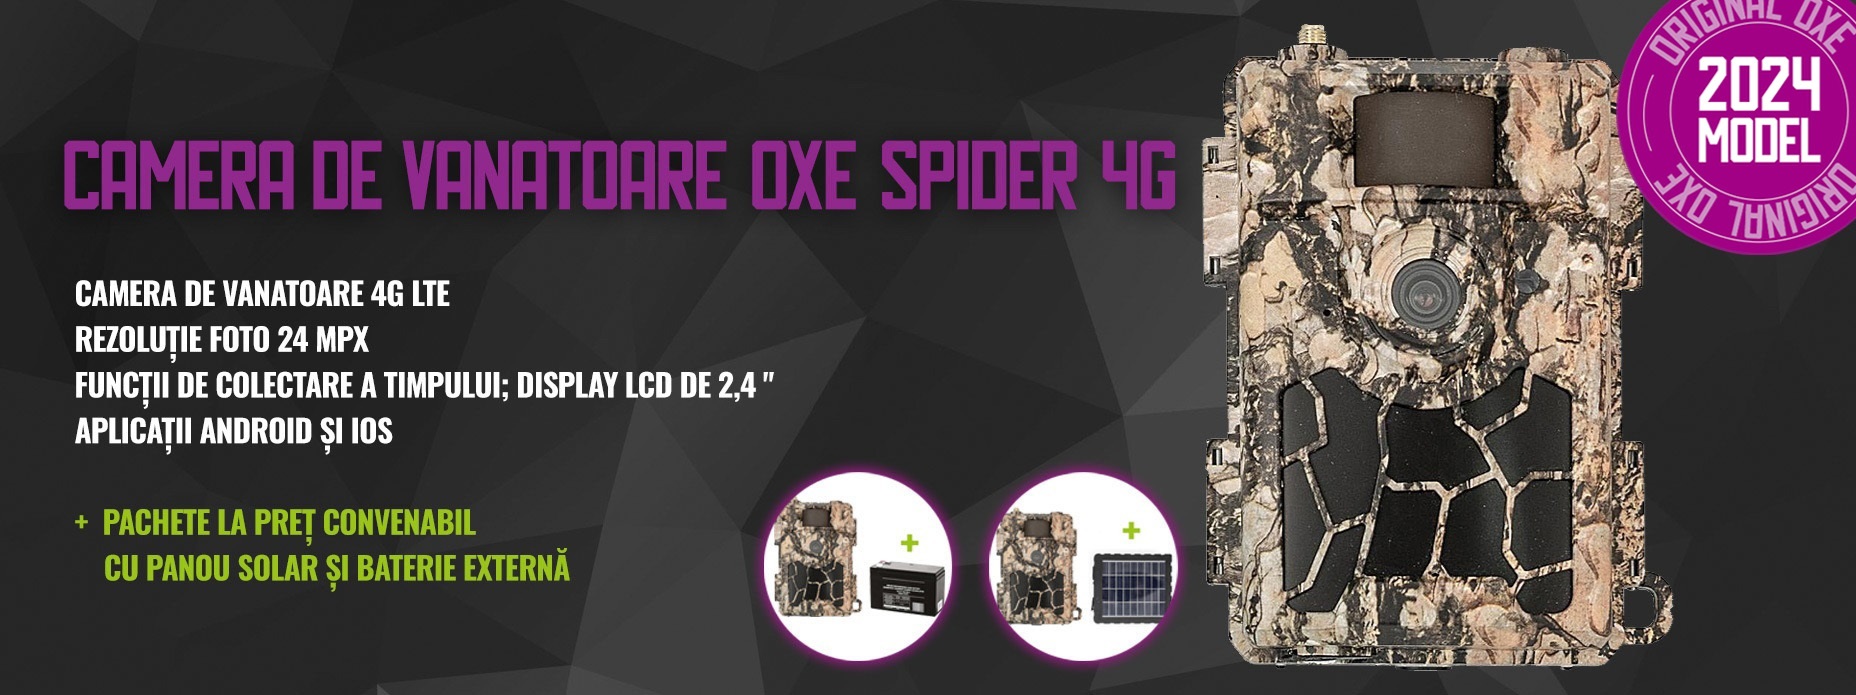 Camera de vanatoare OXE Spider 4G